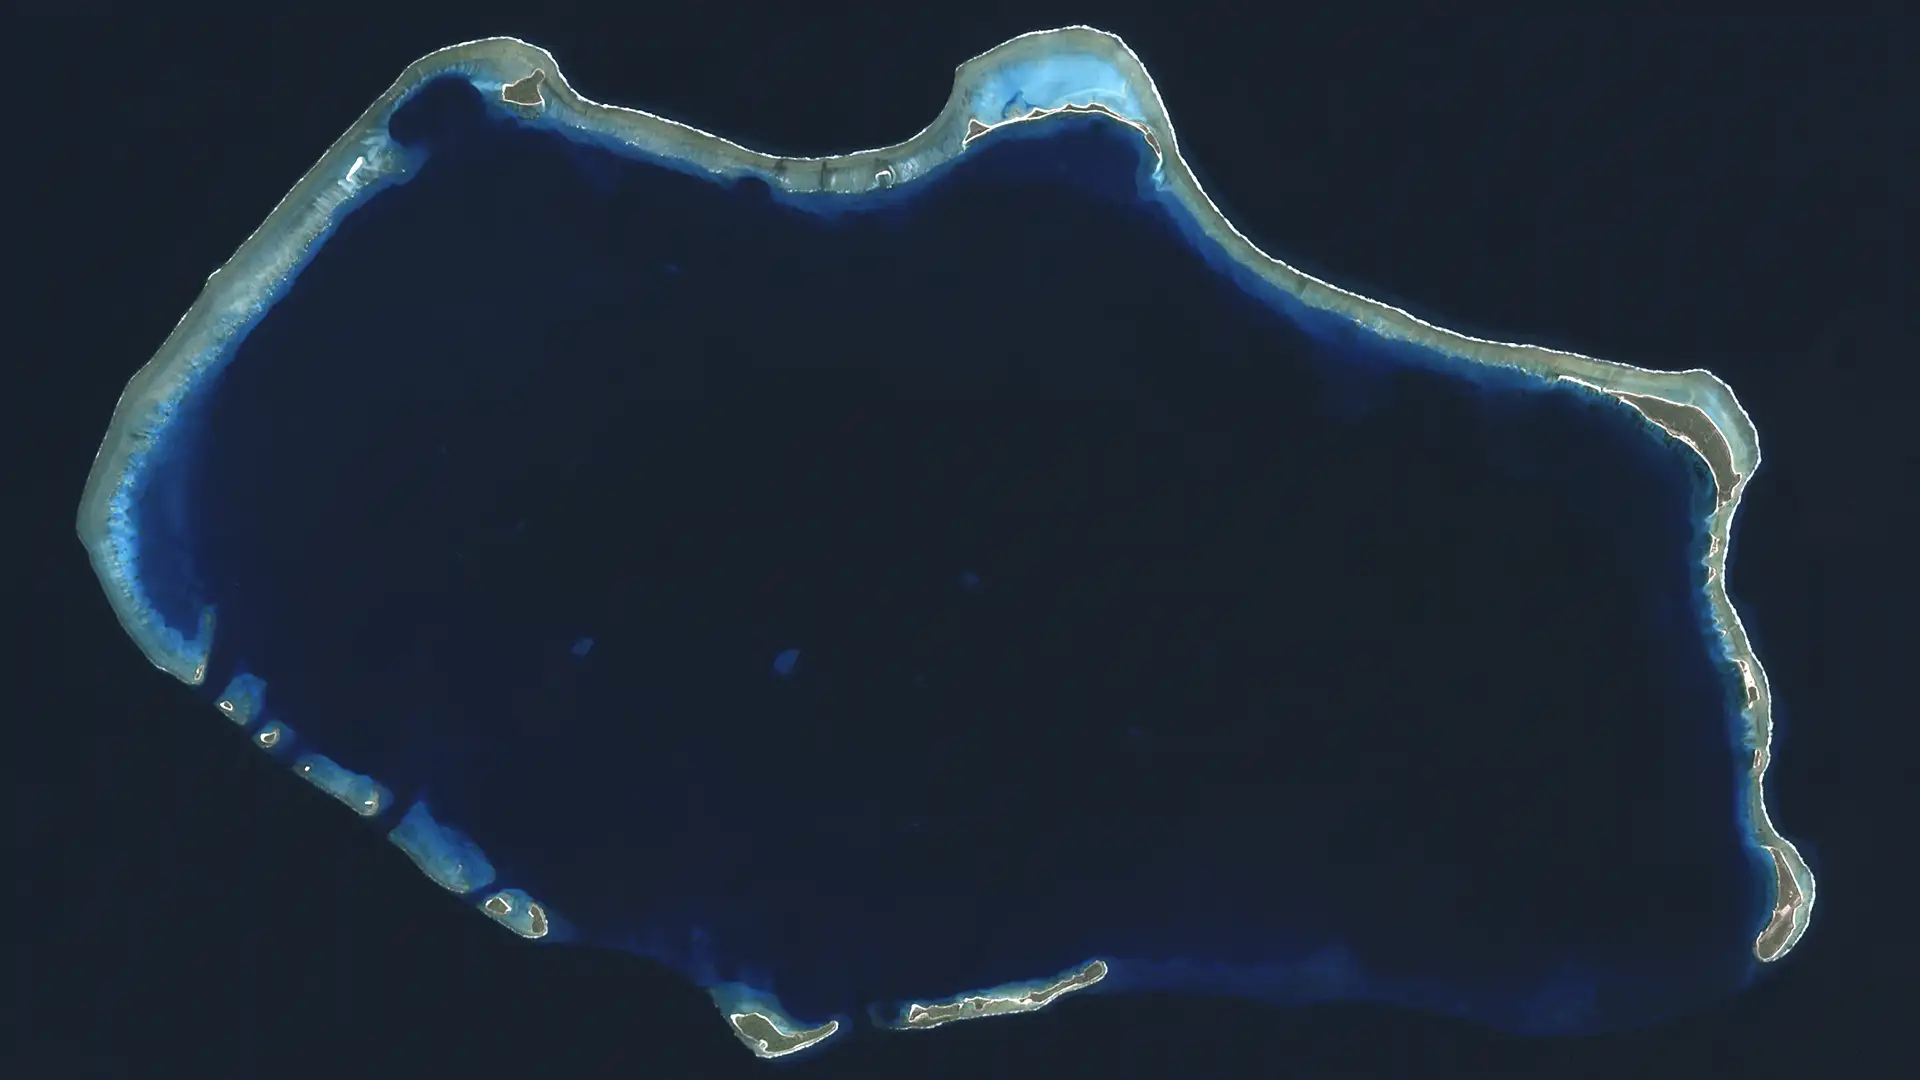 Bikini Atoll aerial view